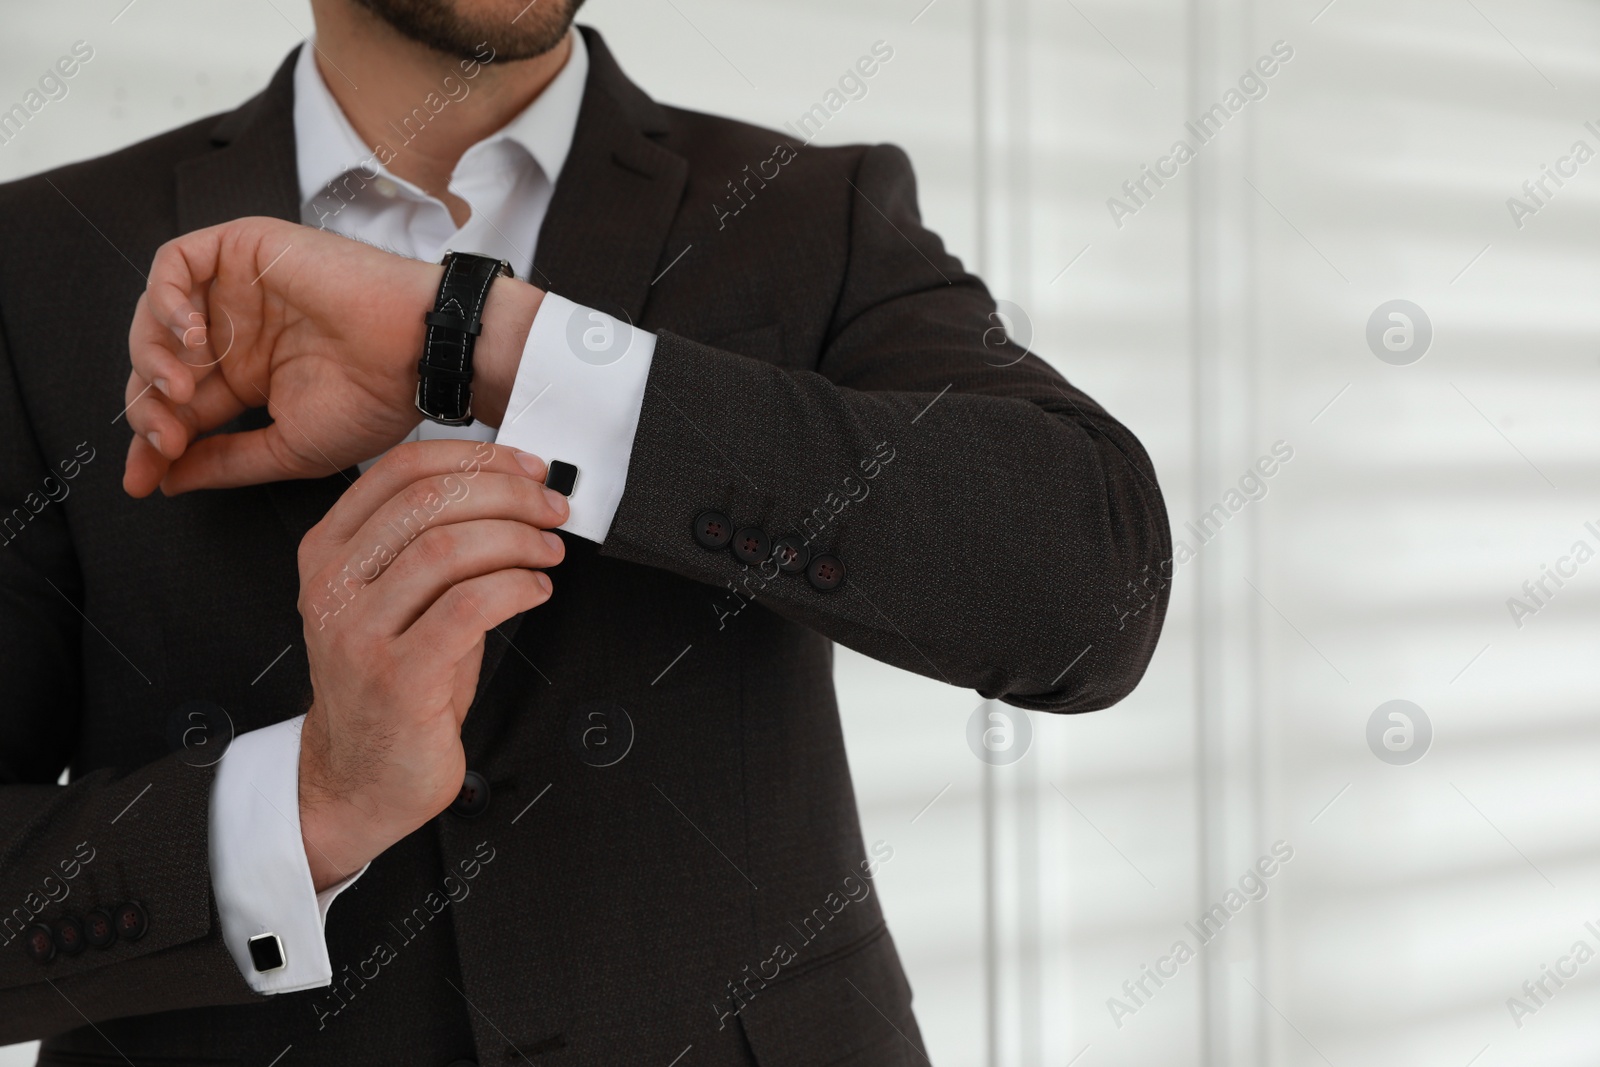 Photo of Man wearing stylish suit and cufflinks near white wall, closeup